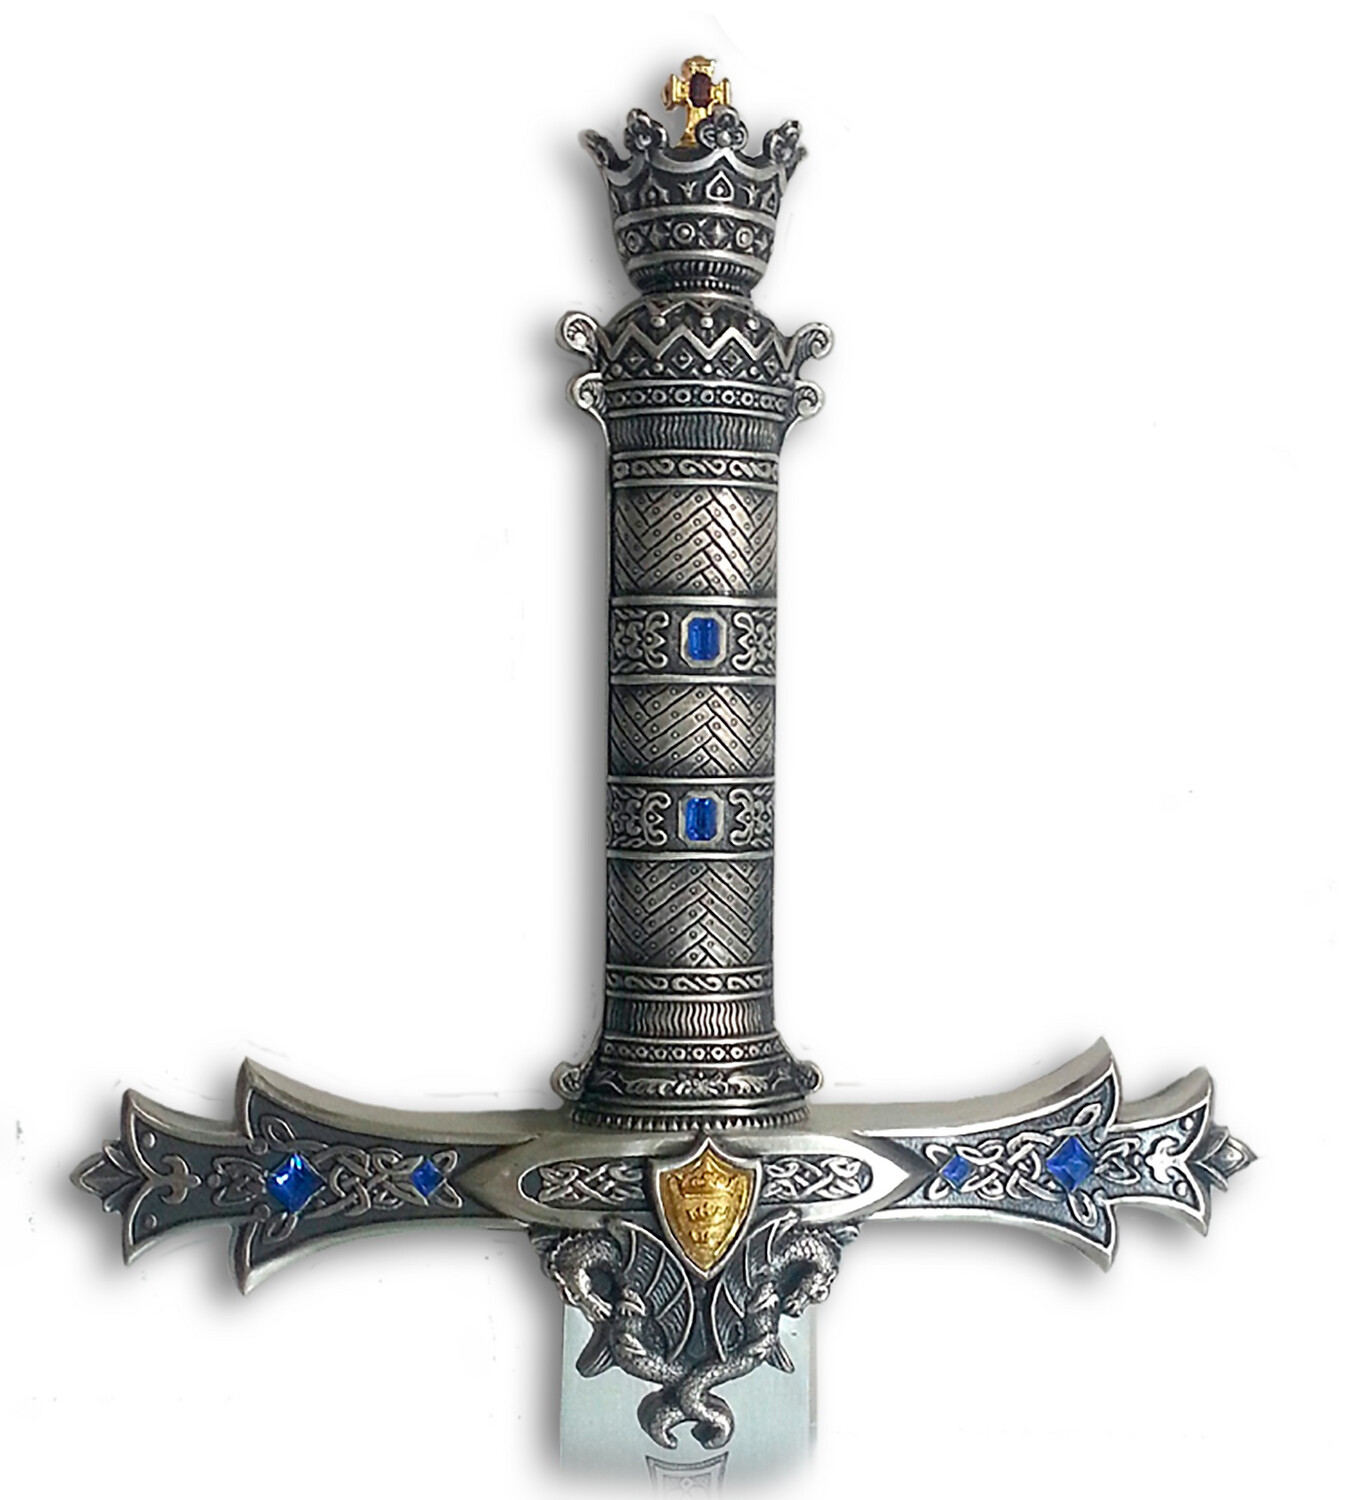 Espada Marto Rey Arturo - King Arthur​